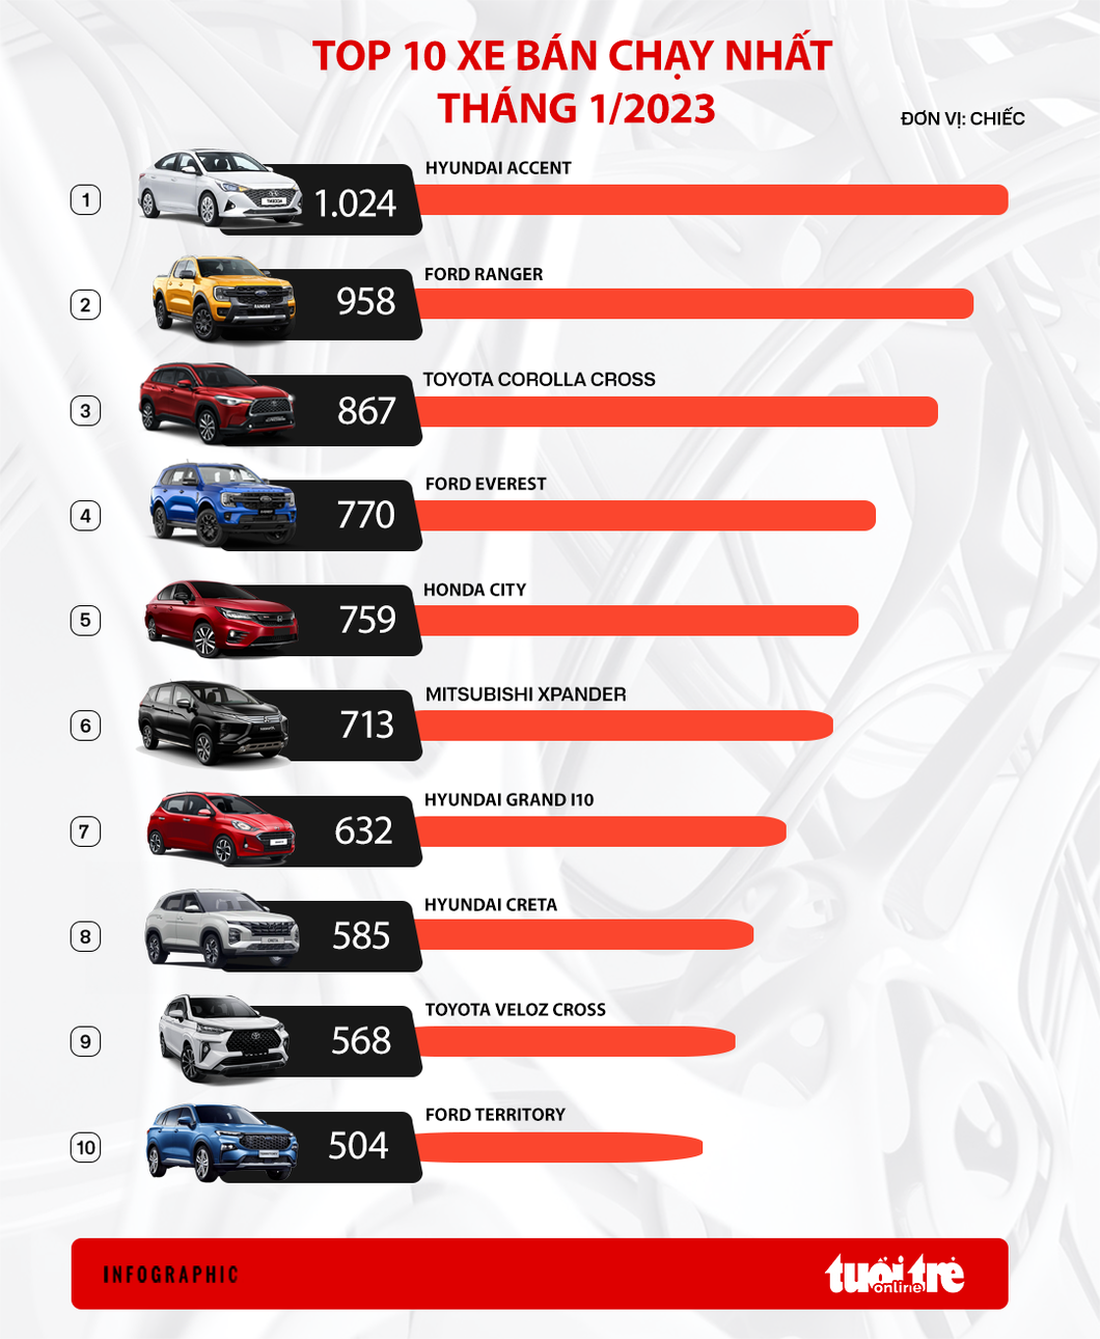 Kia và Mazda vắng bóng trong nhóm 10 xe bán chạy nhất tháng 1, doanh số giảm liên tiếp - Ảnh 2.